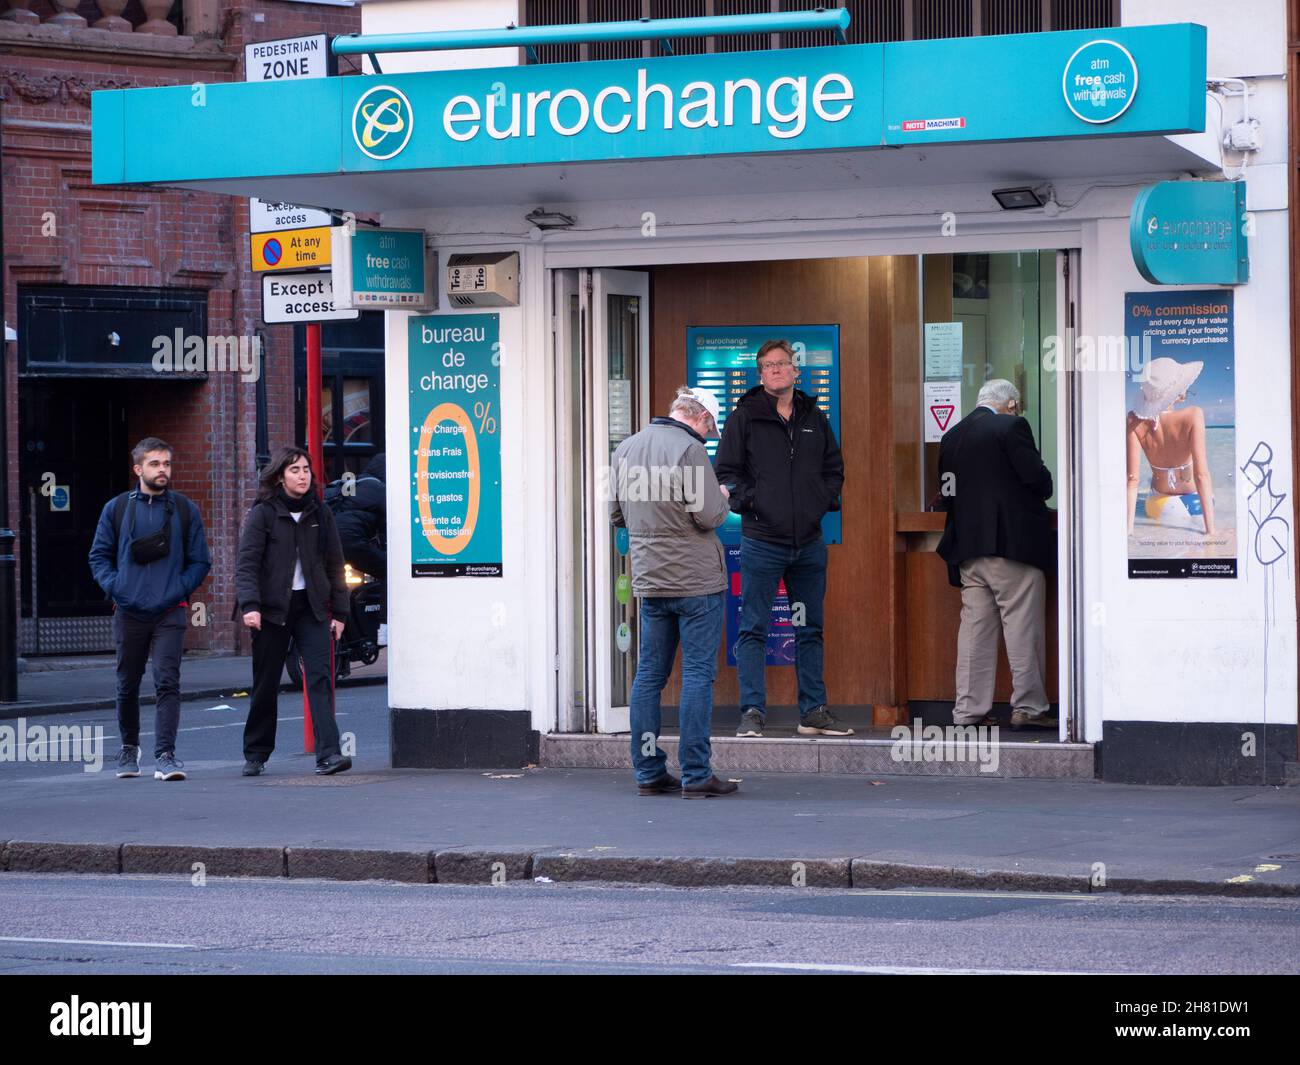 eurochange, bureau de change, money exchange, Stock Photo